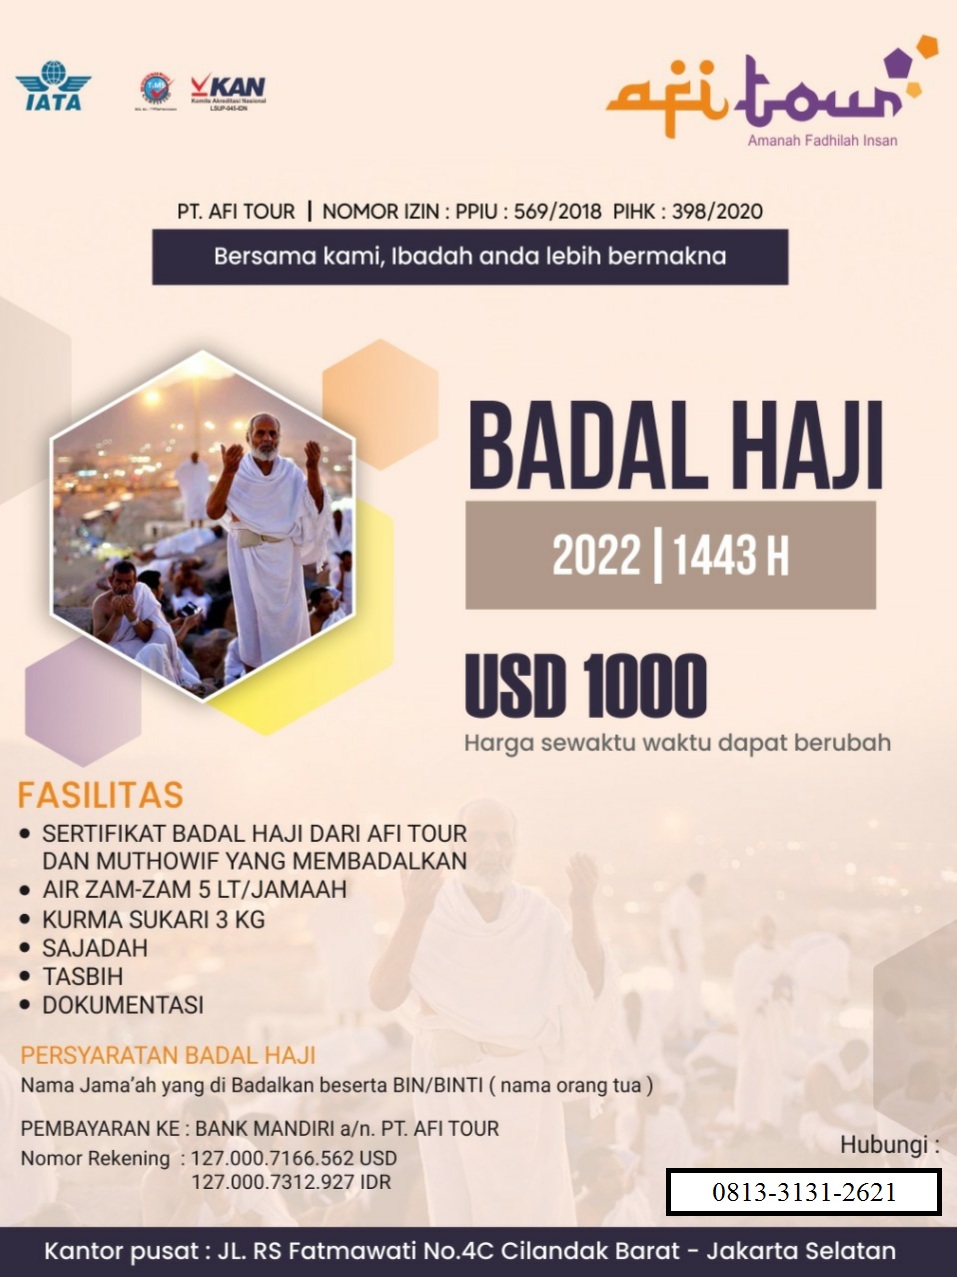 Badal Haji 2022 afitour